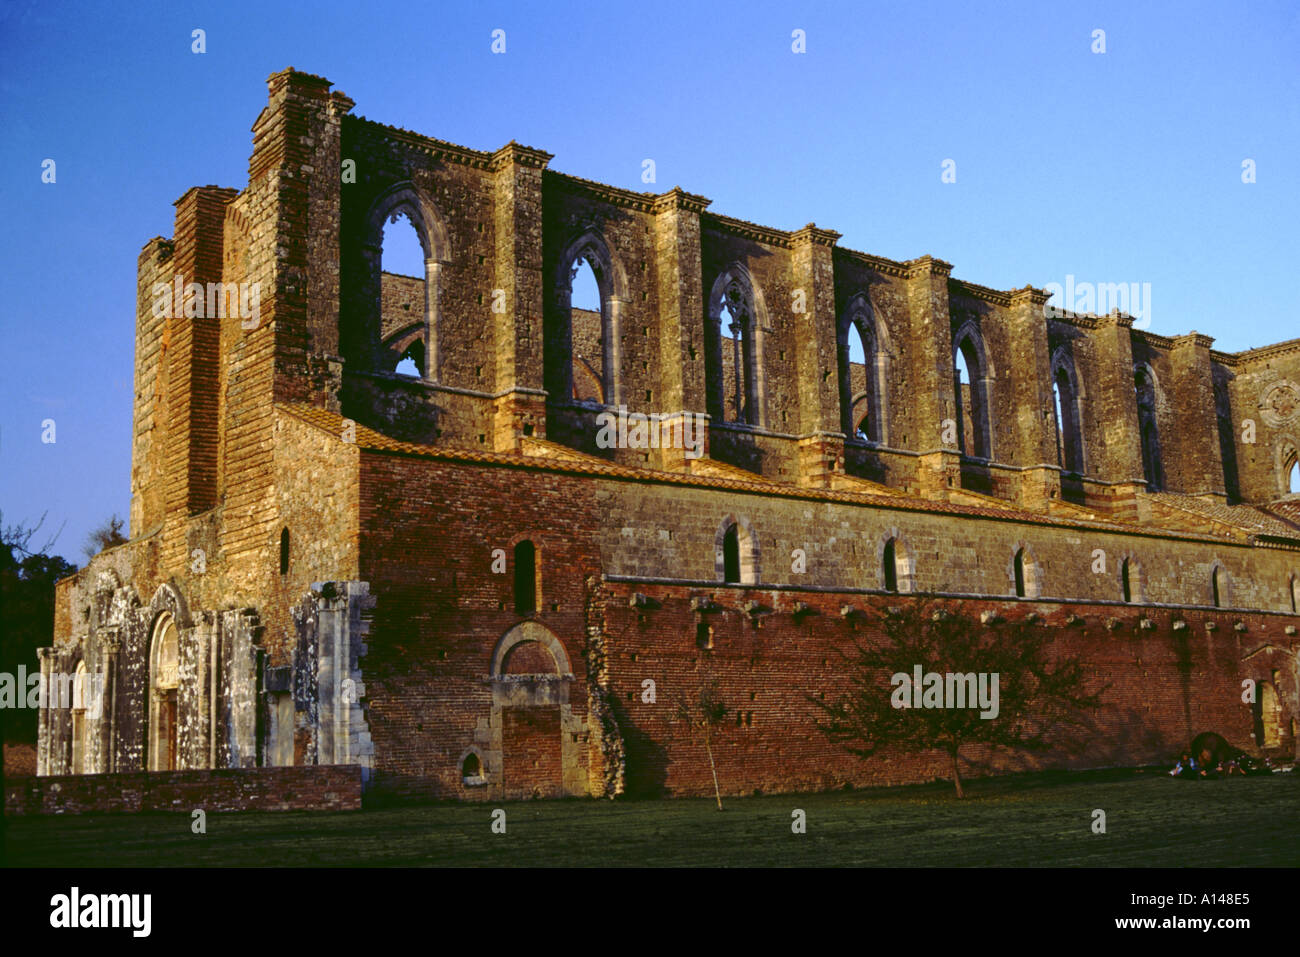 Italy Tuscany monastery of San Galgano ruin Stock Photo